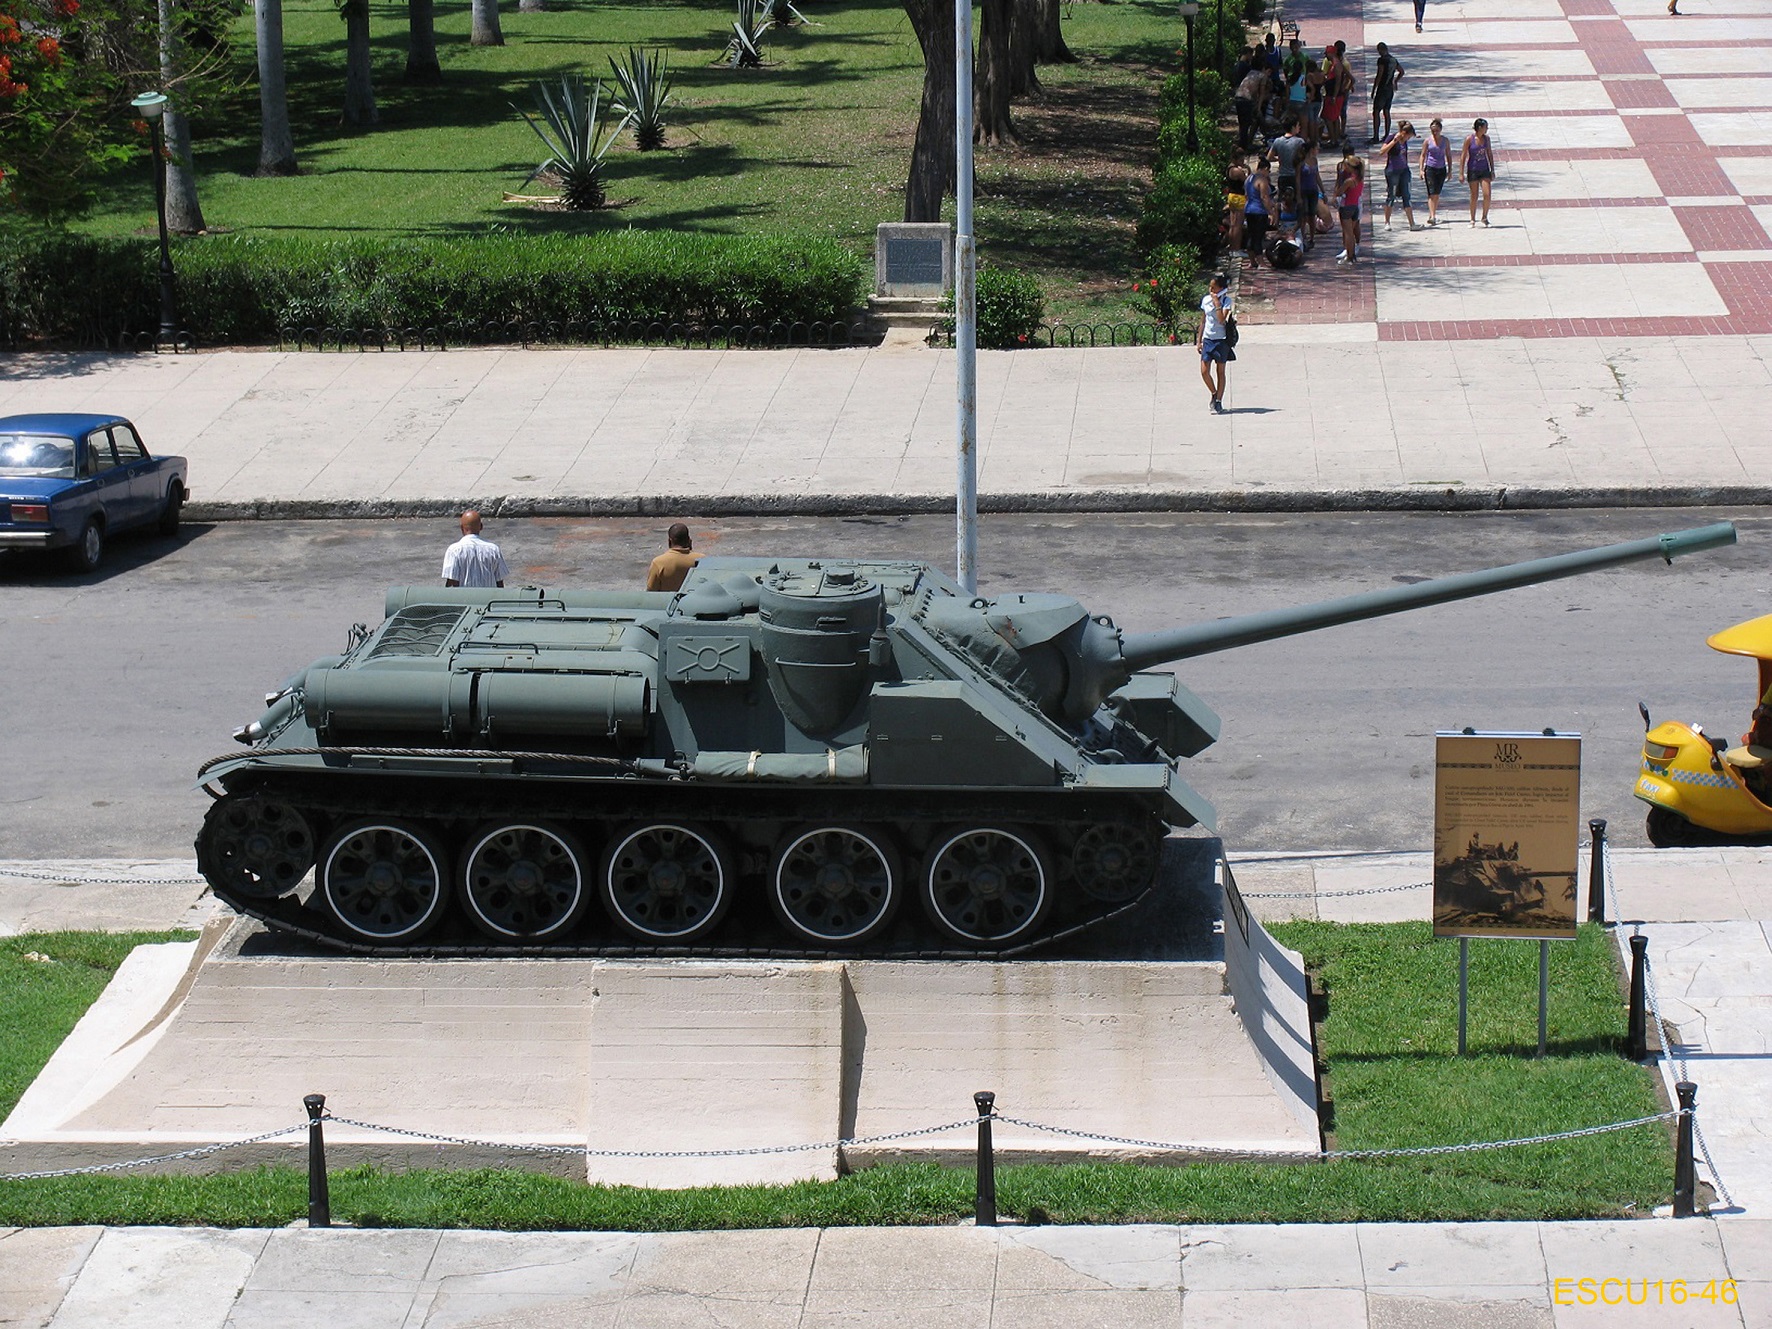 Foto scattate a L'Avana, al carro corazzato SU-100 dal quale Fidel Castro cannoneggi la nave Houston